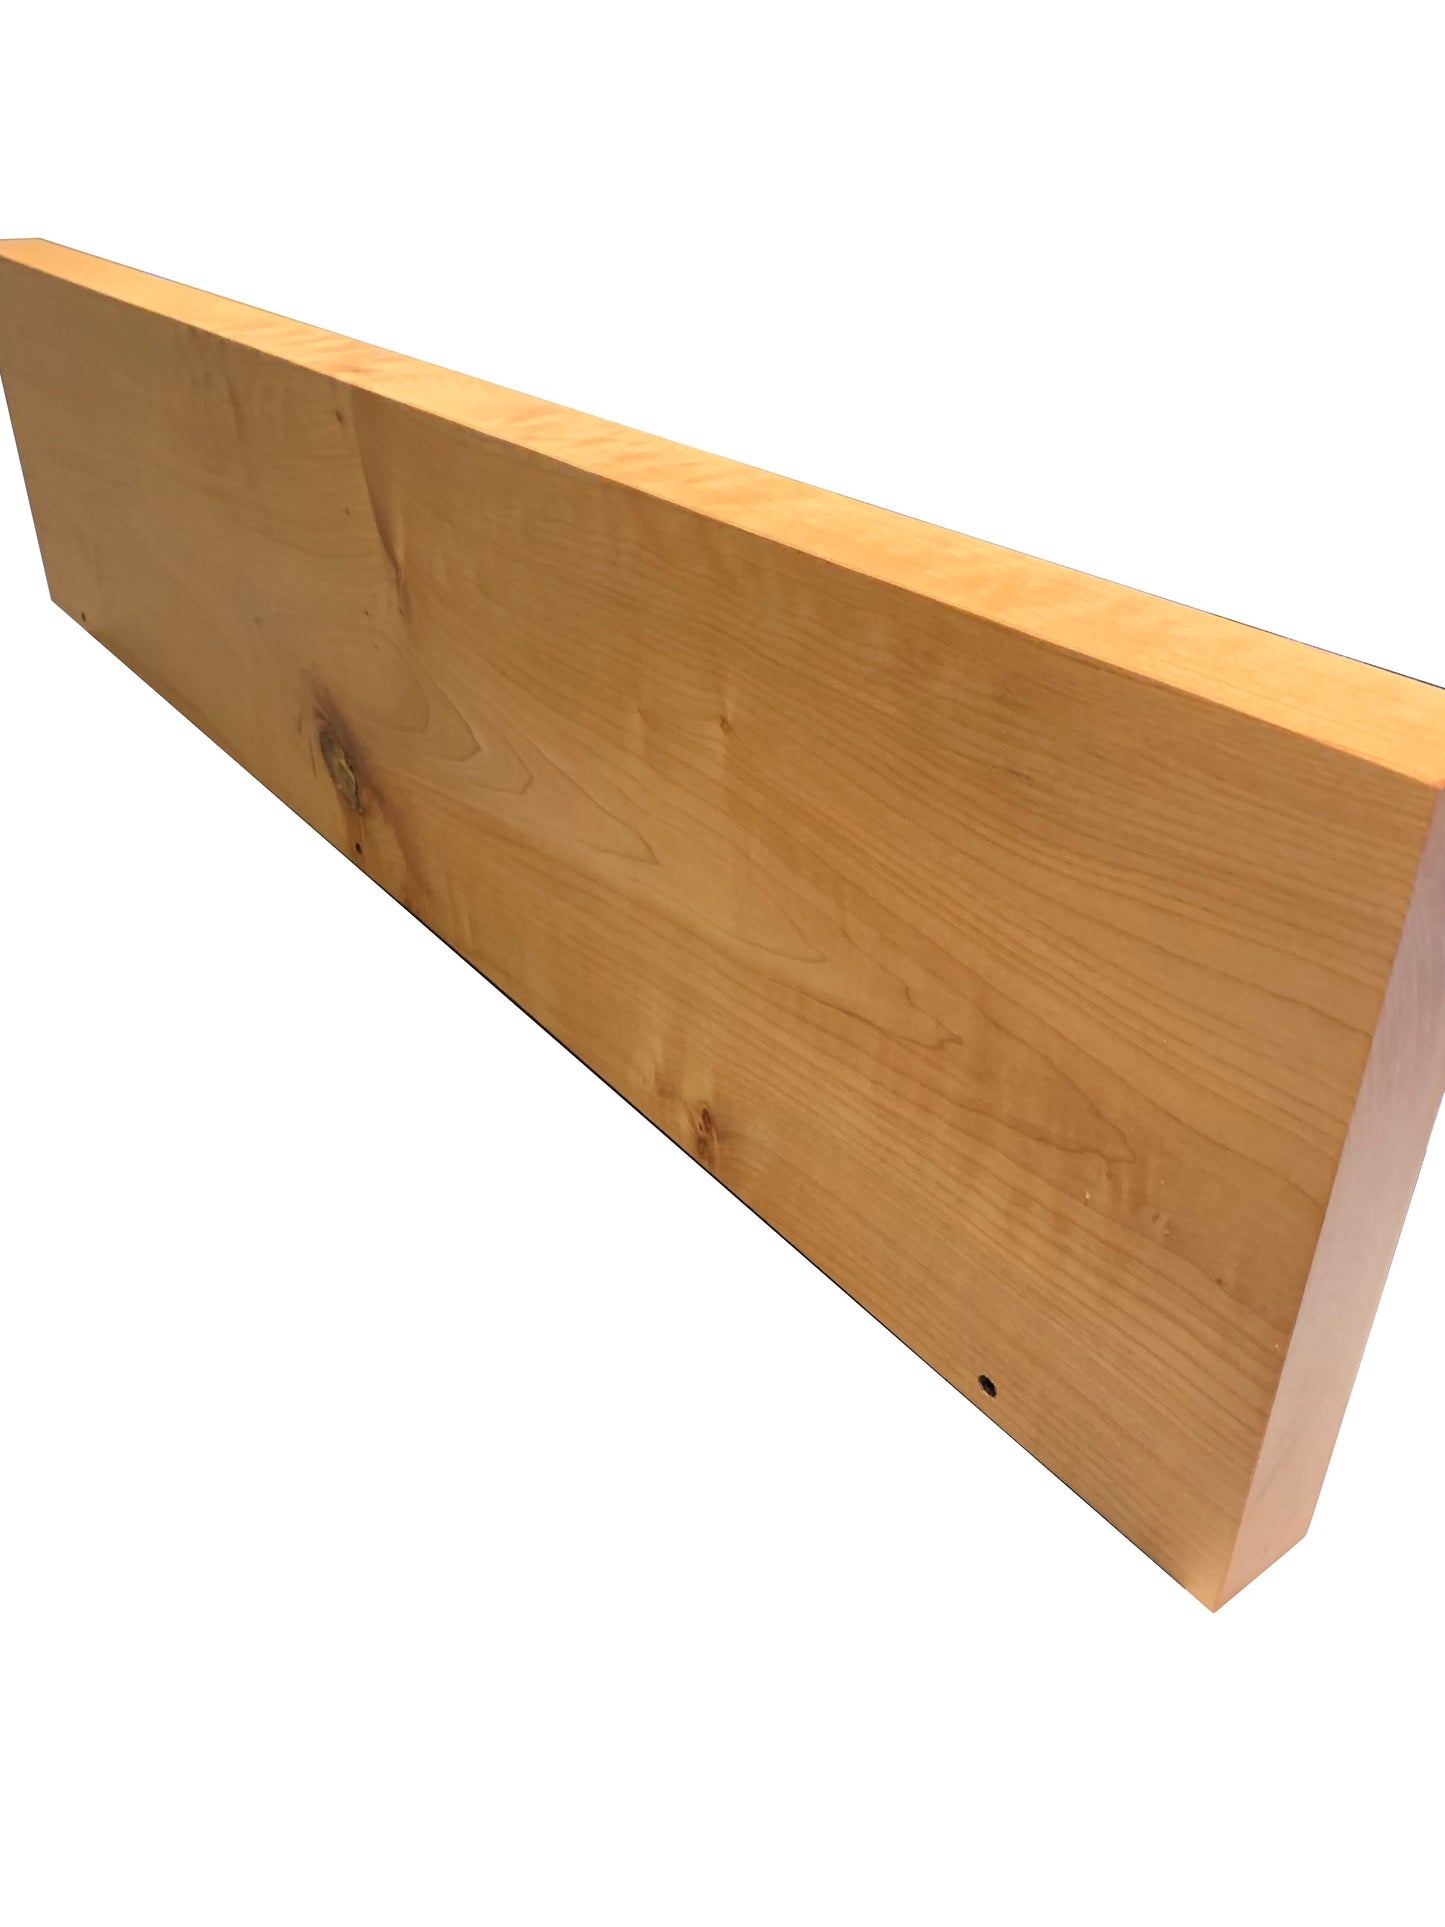 Full Wood Western Maple Floating Shelf - Pure Finish